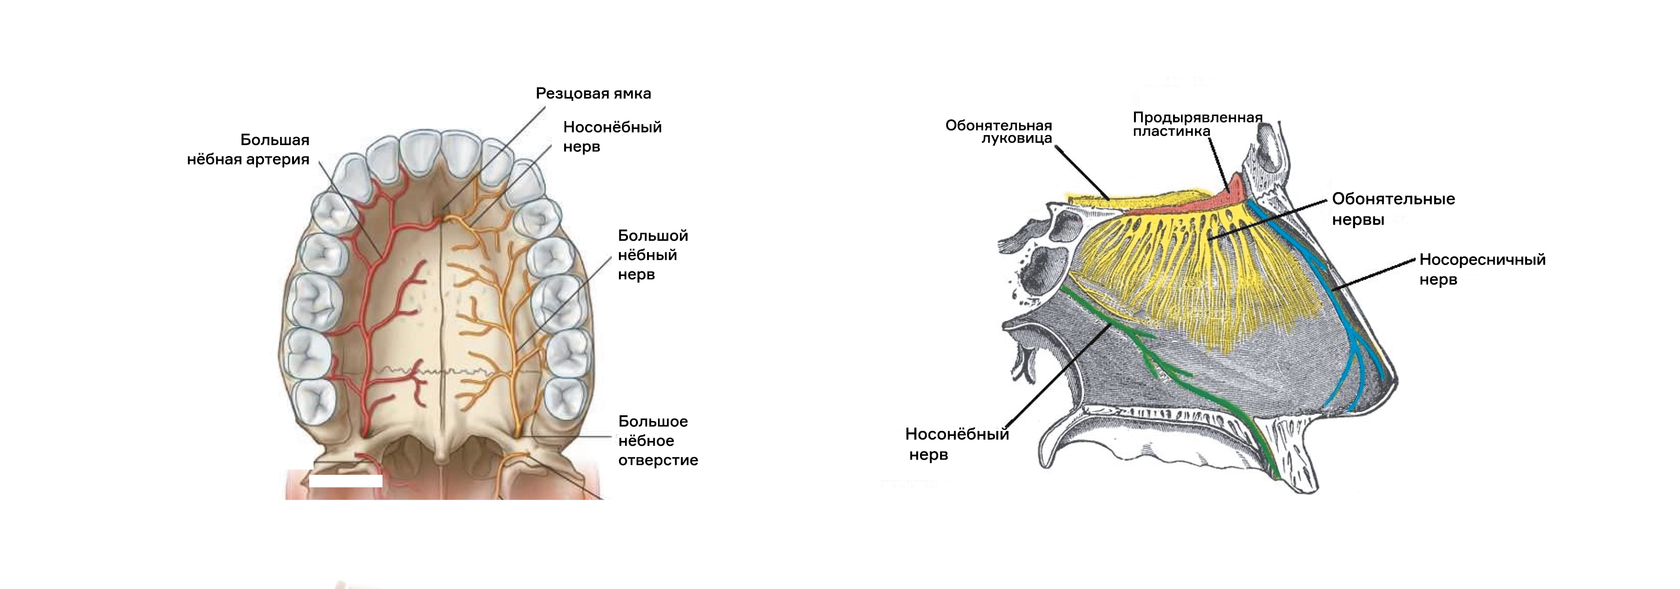 Верхняя расширенная часть. Резцовый канал верхней челюсти анатомия. Иннервация верхней челюсти нервы. Резцовый нерв верхней челюсти. Небный отросток верхней челюсти анатомия.